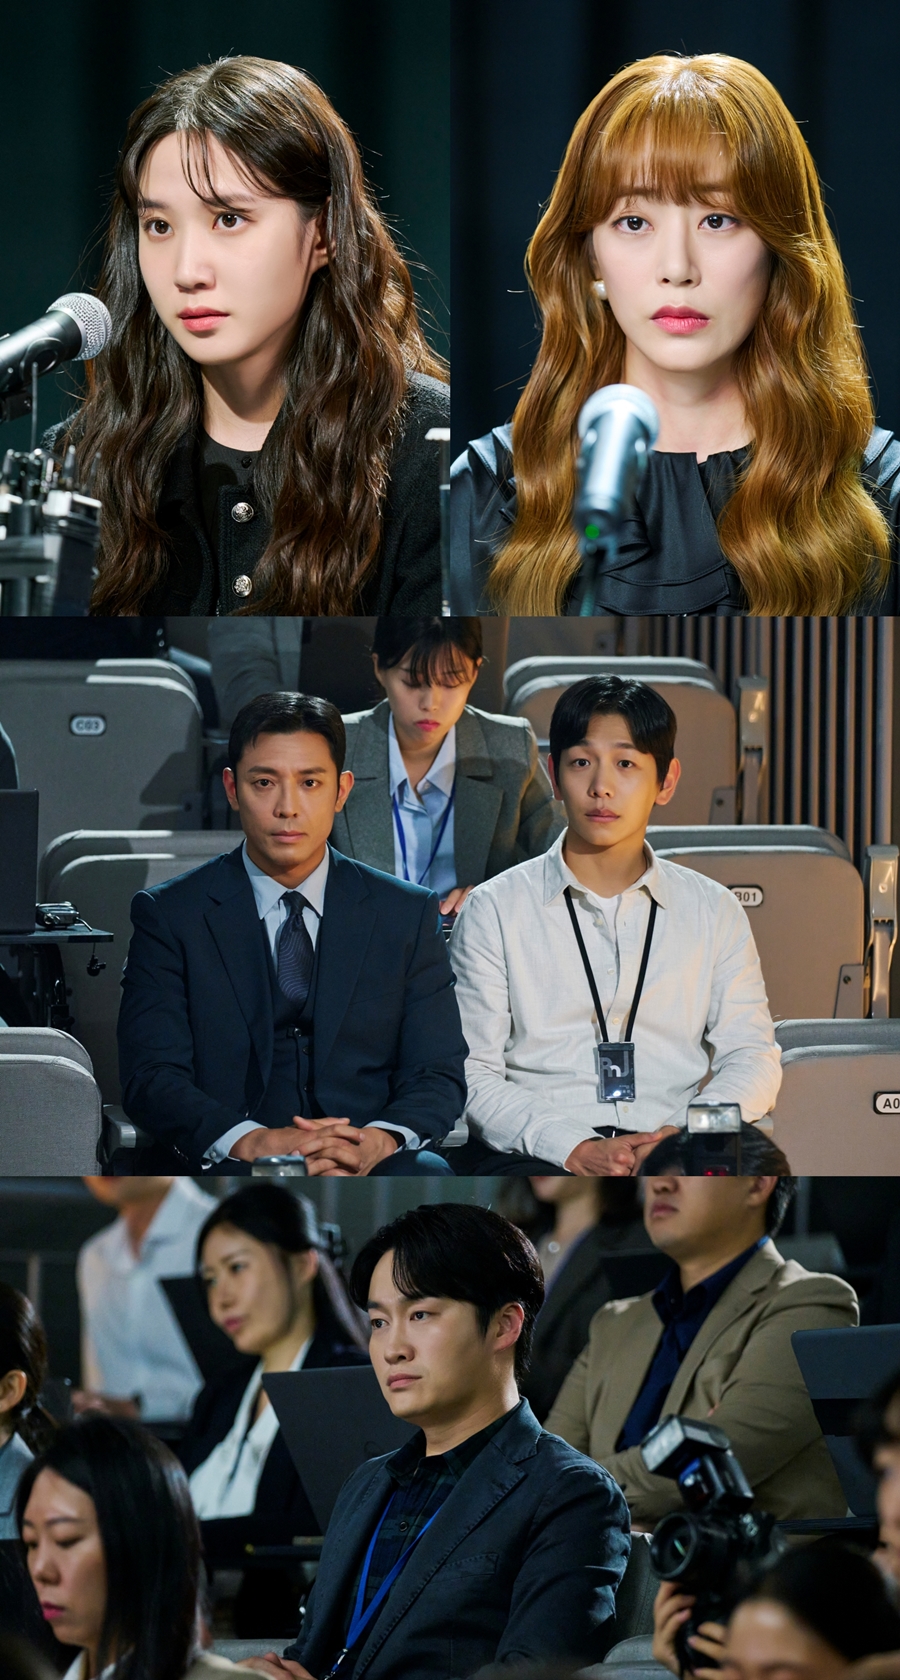 박은빈·김효진, 논란 정면 돌파…기자회견 개최로 통쾌한 한 방 (무디바)